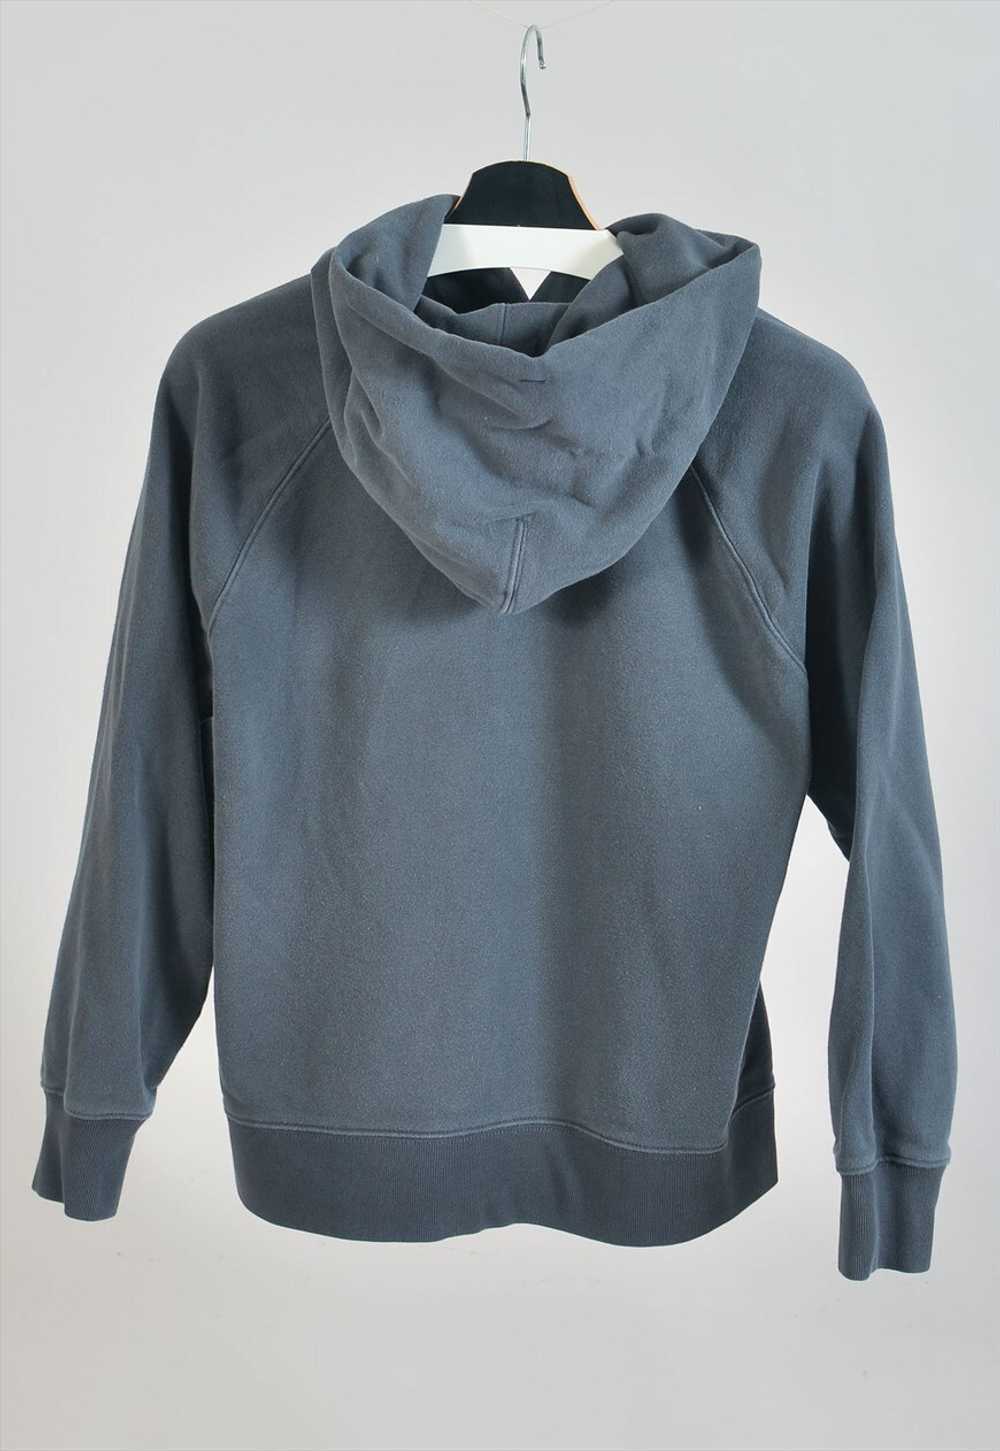 Vintage 90s Levi's hoodie in grey - image 3